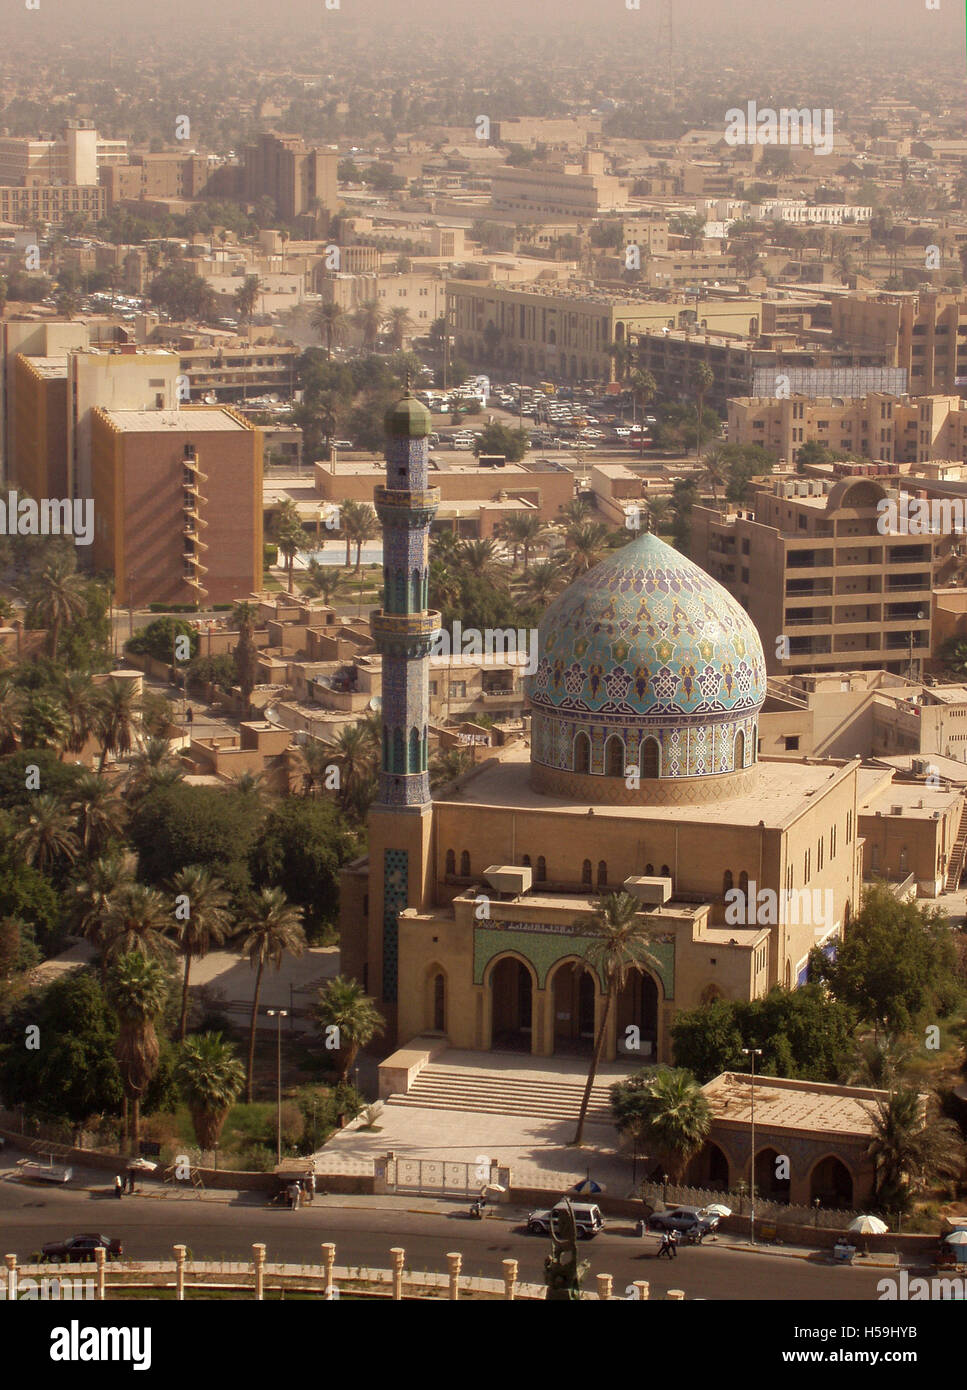 November 2003 Der Blick nach Osten vom Dach des Sheraton Hotels in Bagdad: Die 17 Ramadan-Moschee und die Stadt darüber hinaus. Stockfoto